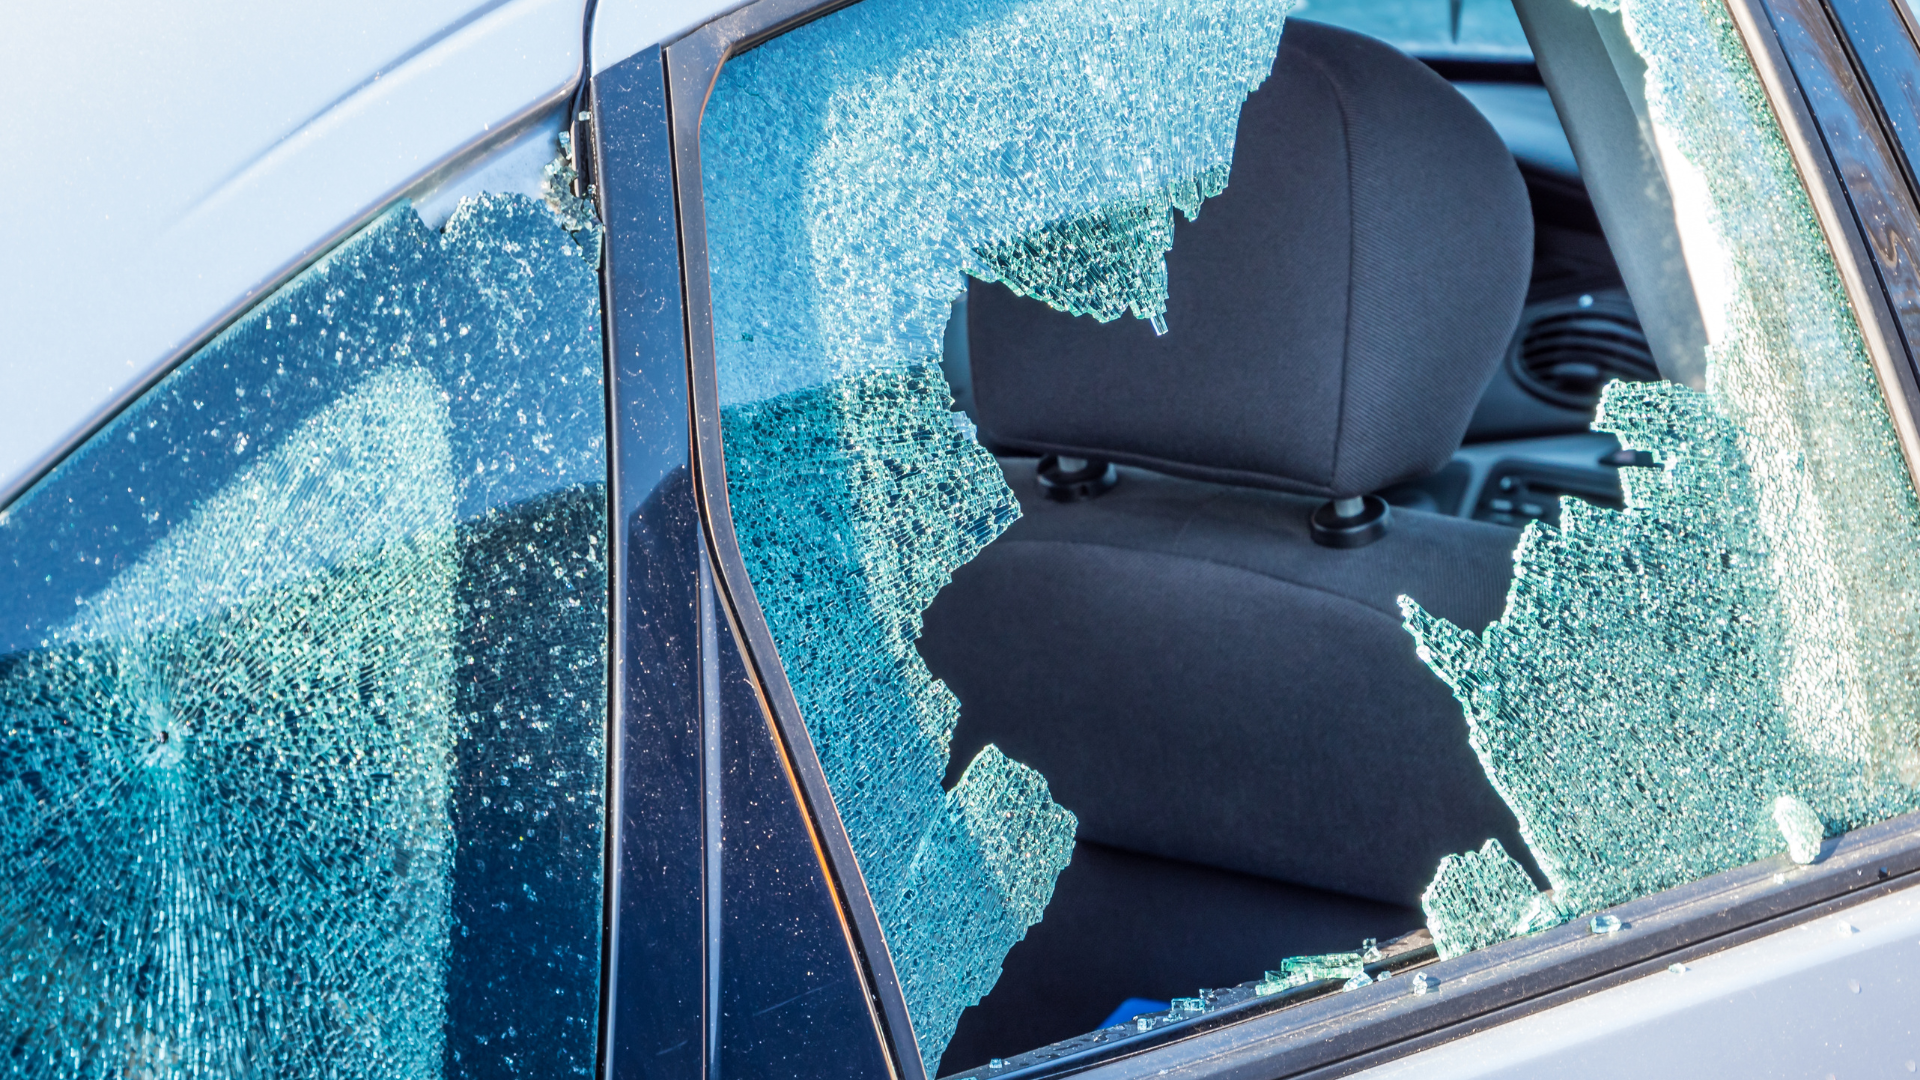 Broken window in automobile